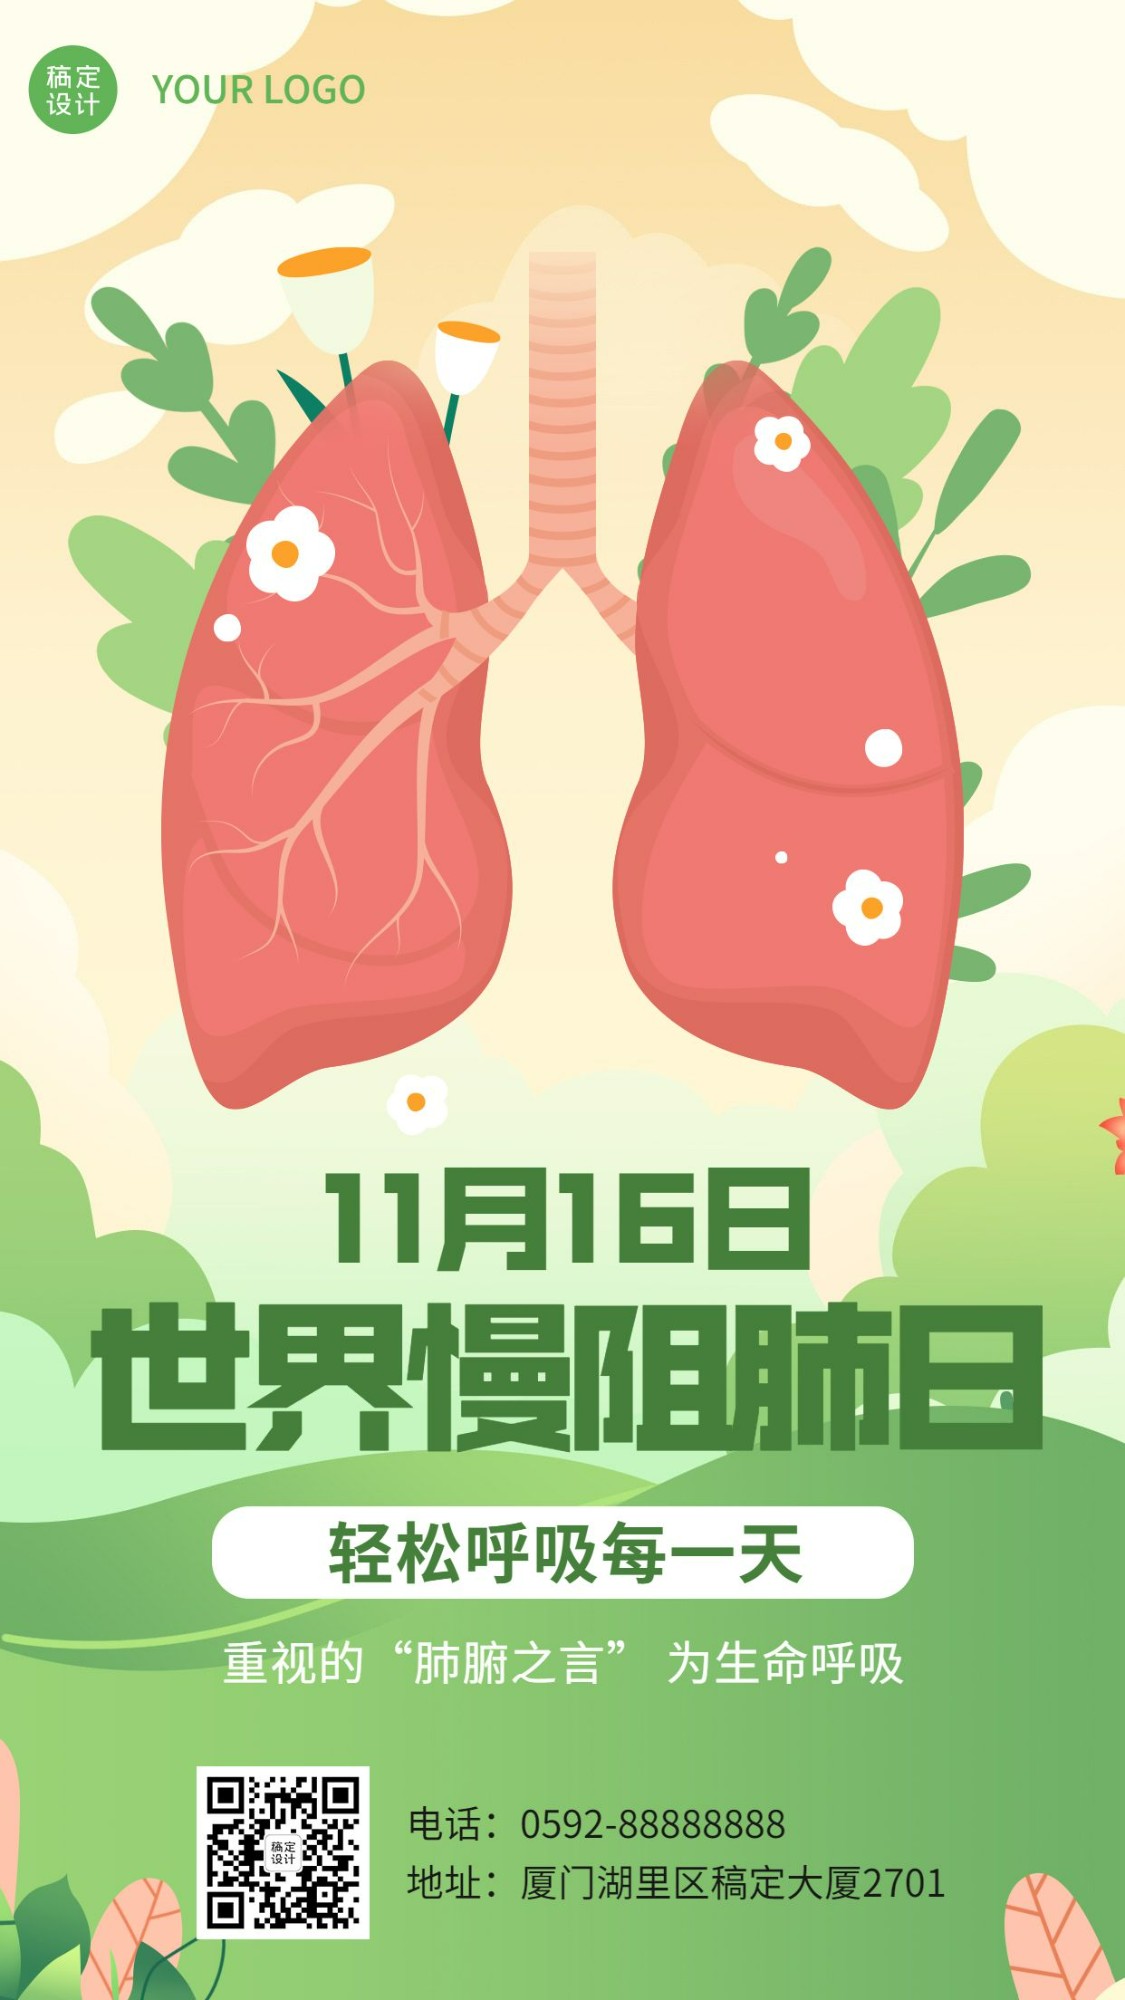 世界慢阻肺日健康生活医疗宣传手绘插画手机海报预览效果